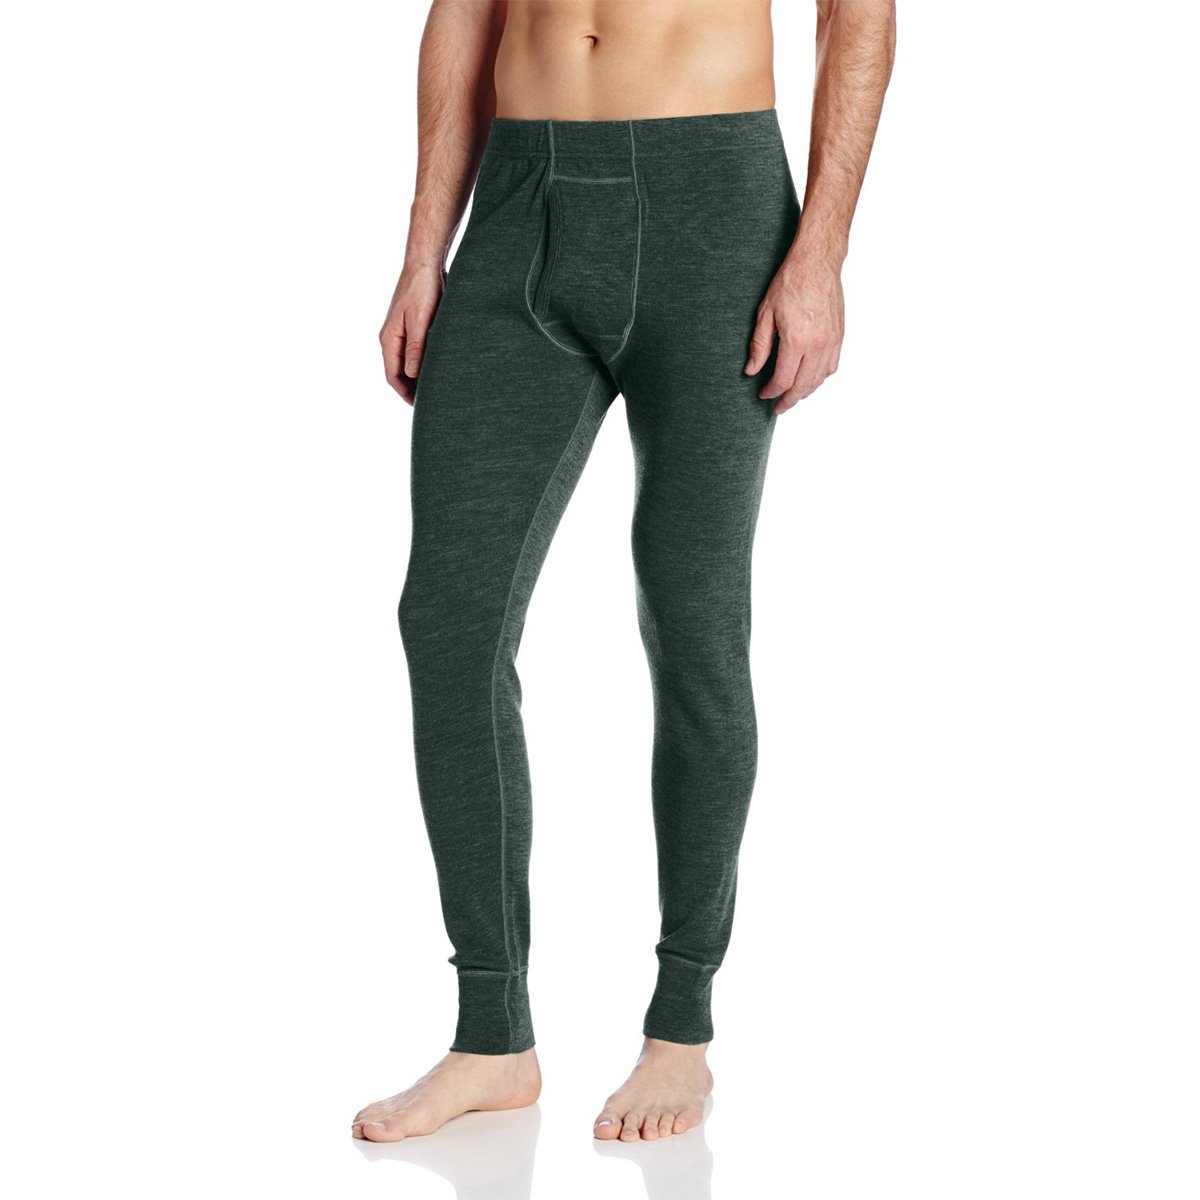 Minus33 Kancamagus Men’s Midweight Base Layer Pants - 100% Merino Wool Bottoms - Multi Use Long Johns - Thermal Underwear